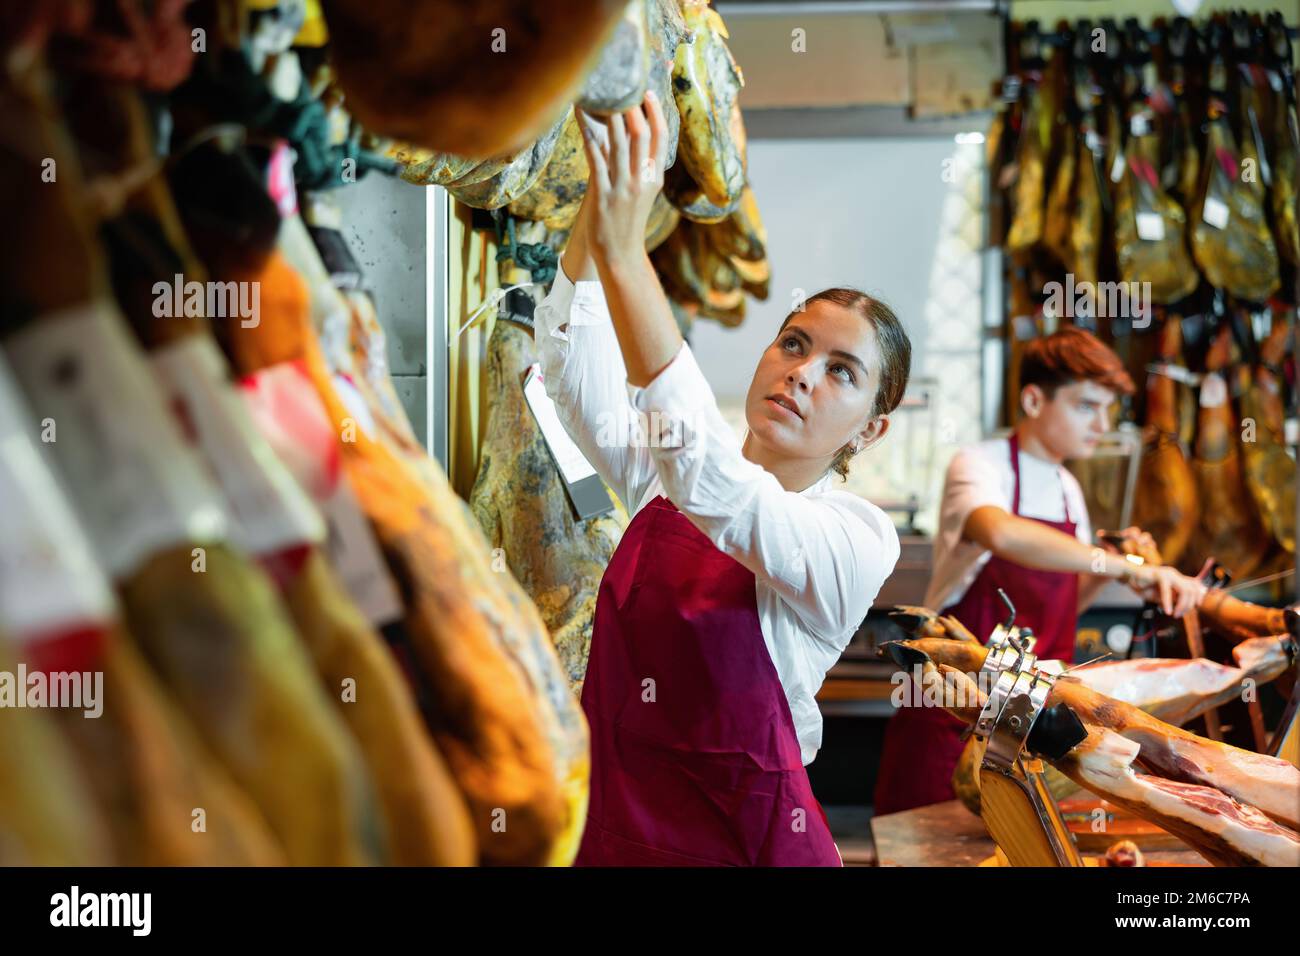 Junge Verkäuferin, die an der Theke des Metzgers arbeitet und iberischen Jamon verkauft Stockfoto